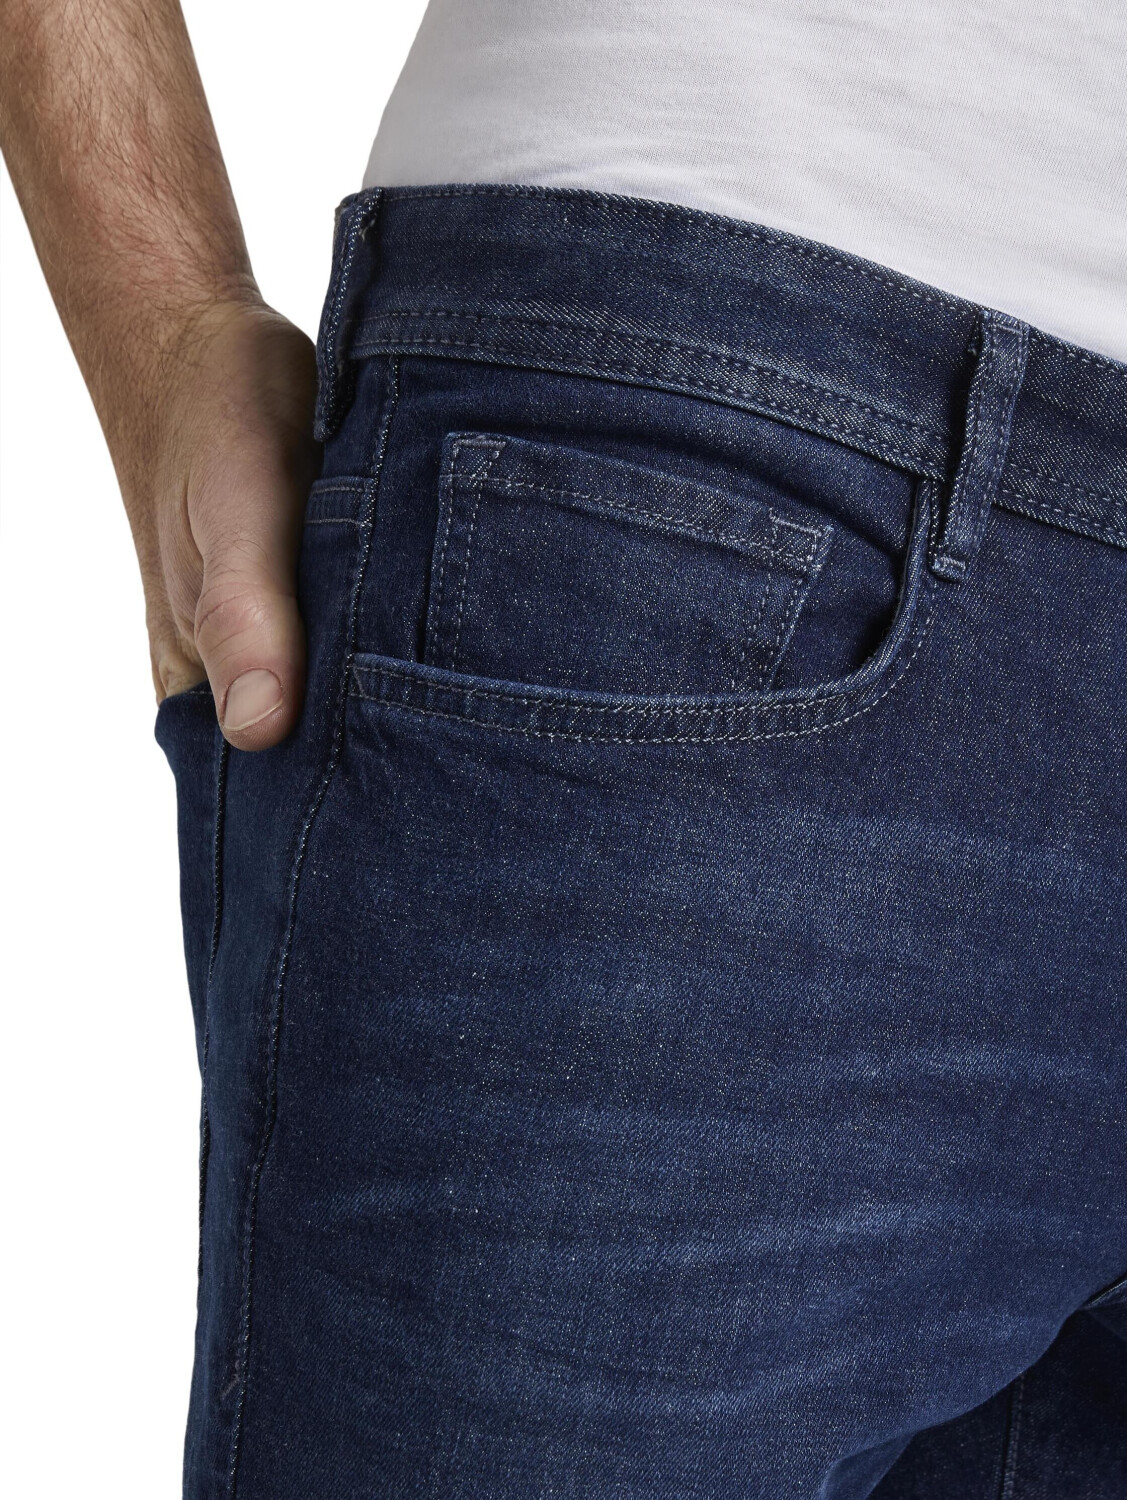 Tom Tailor Herren-jeans denim € dark Preisvergleich ab bei 32,90 stone (1020102) wash 